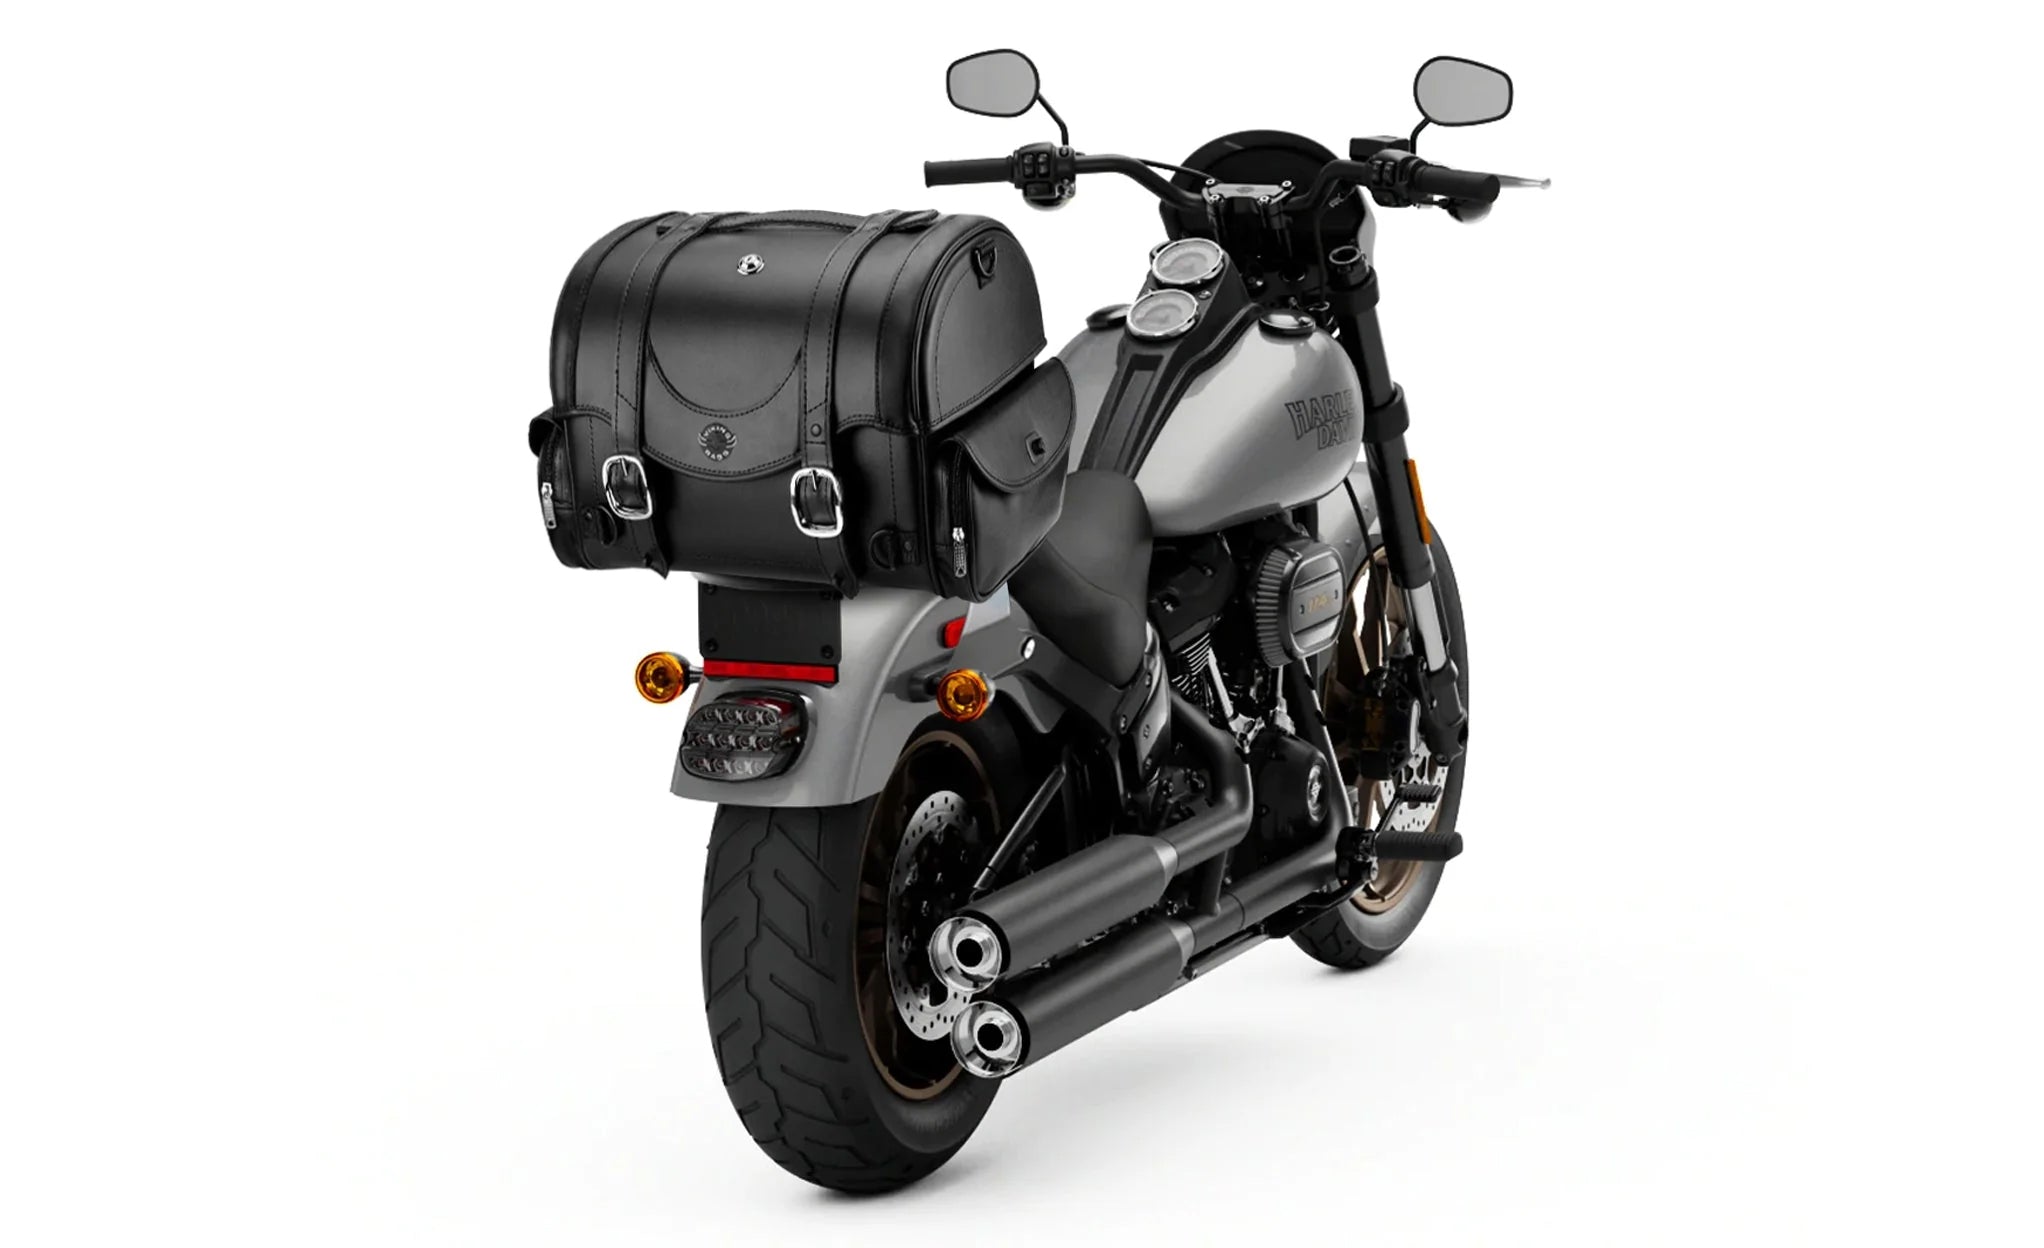 21L - Century Medium Leather Motorcycle Sissy Bar Bag on Bike Photo @expand